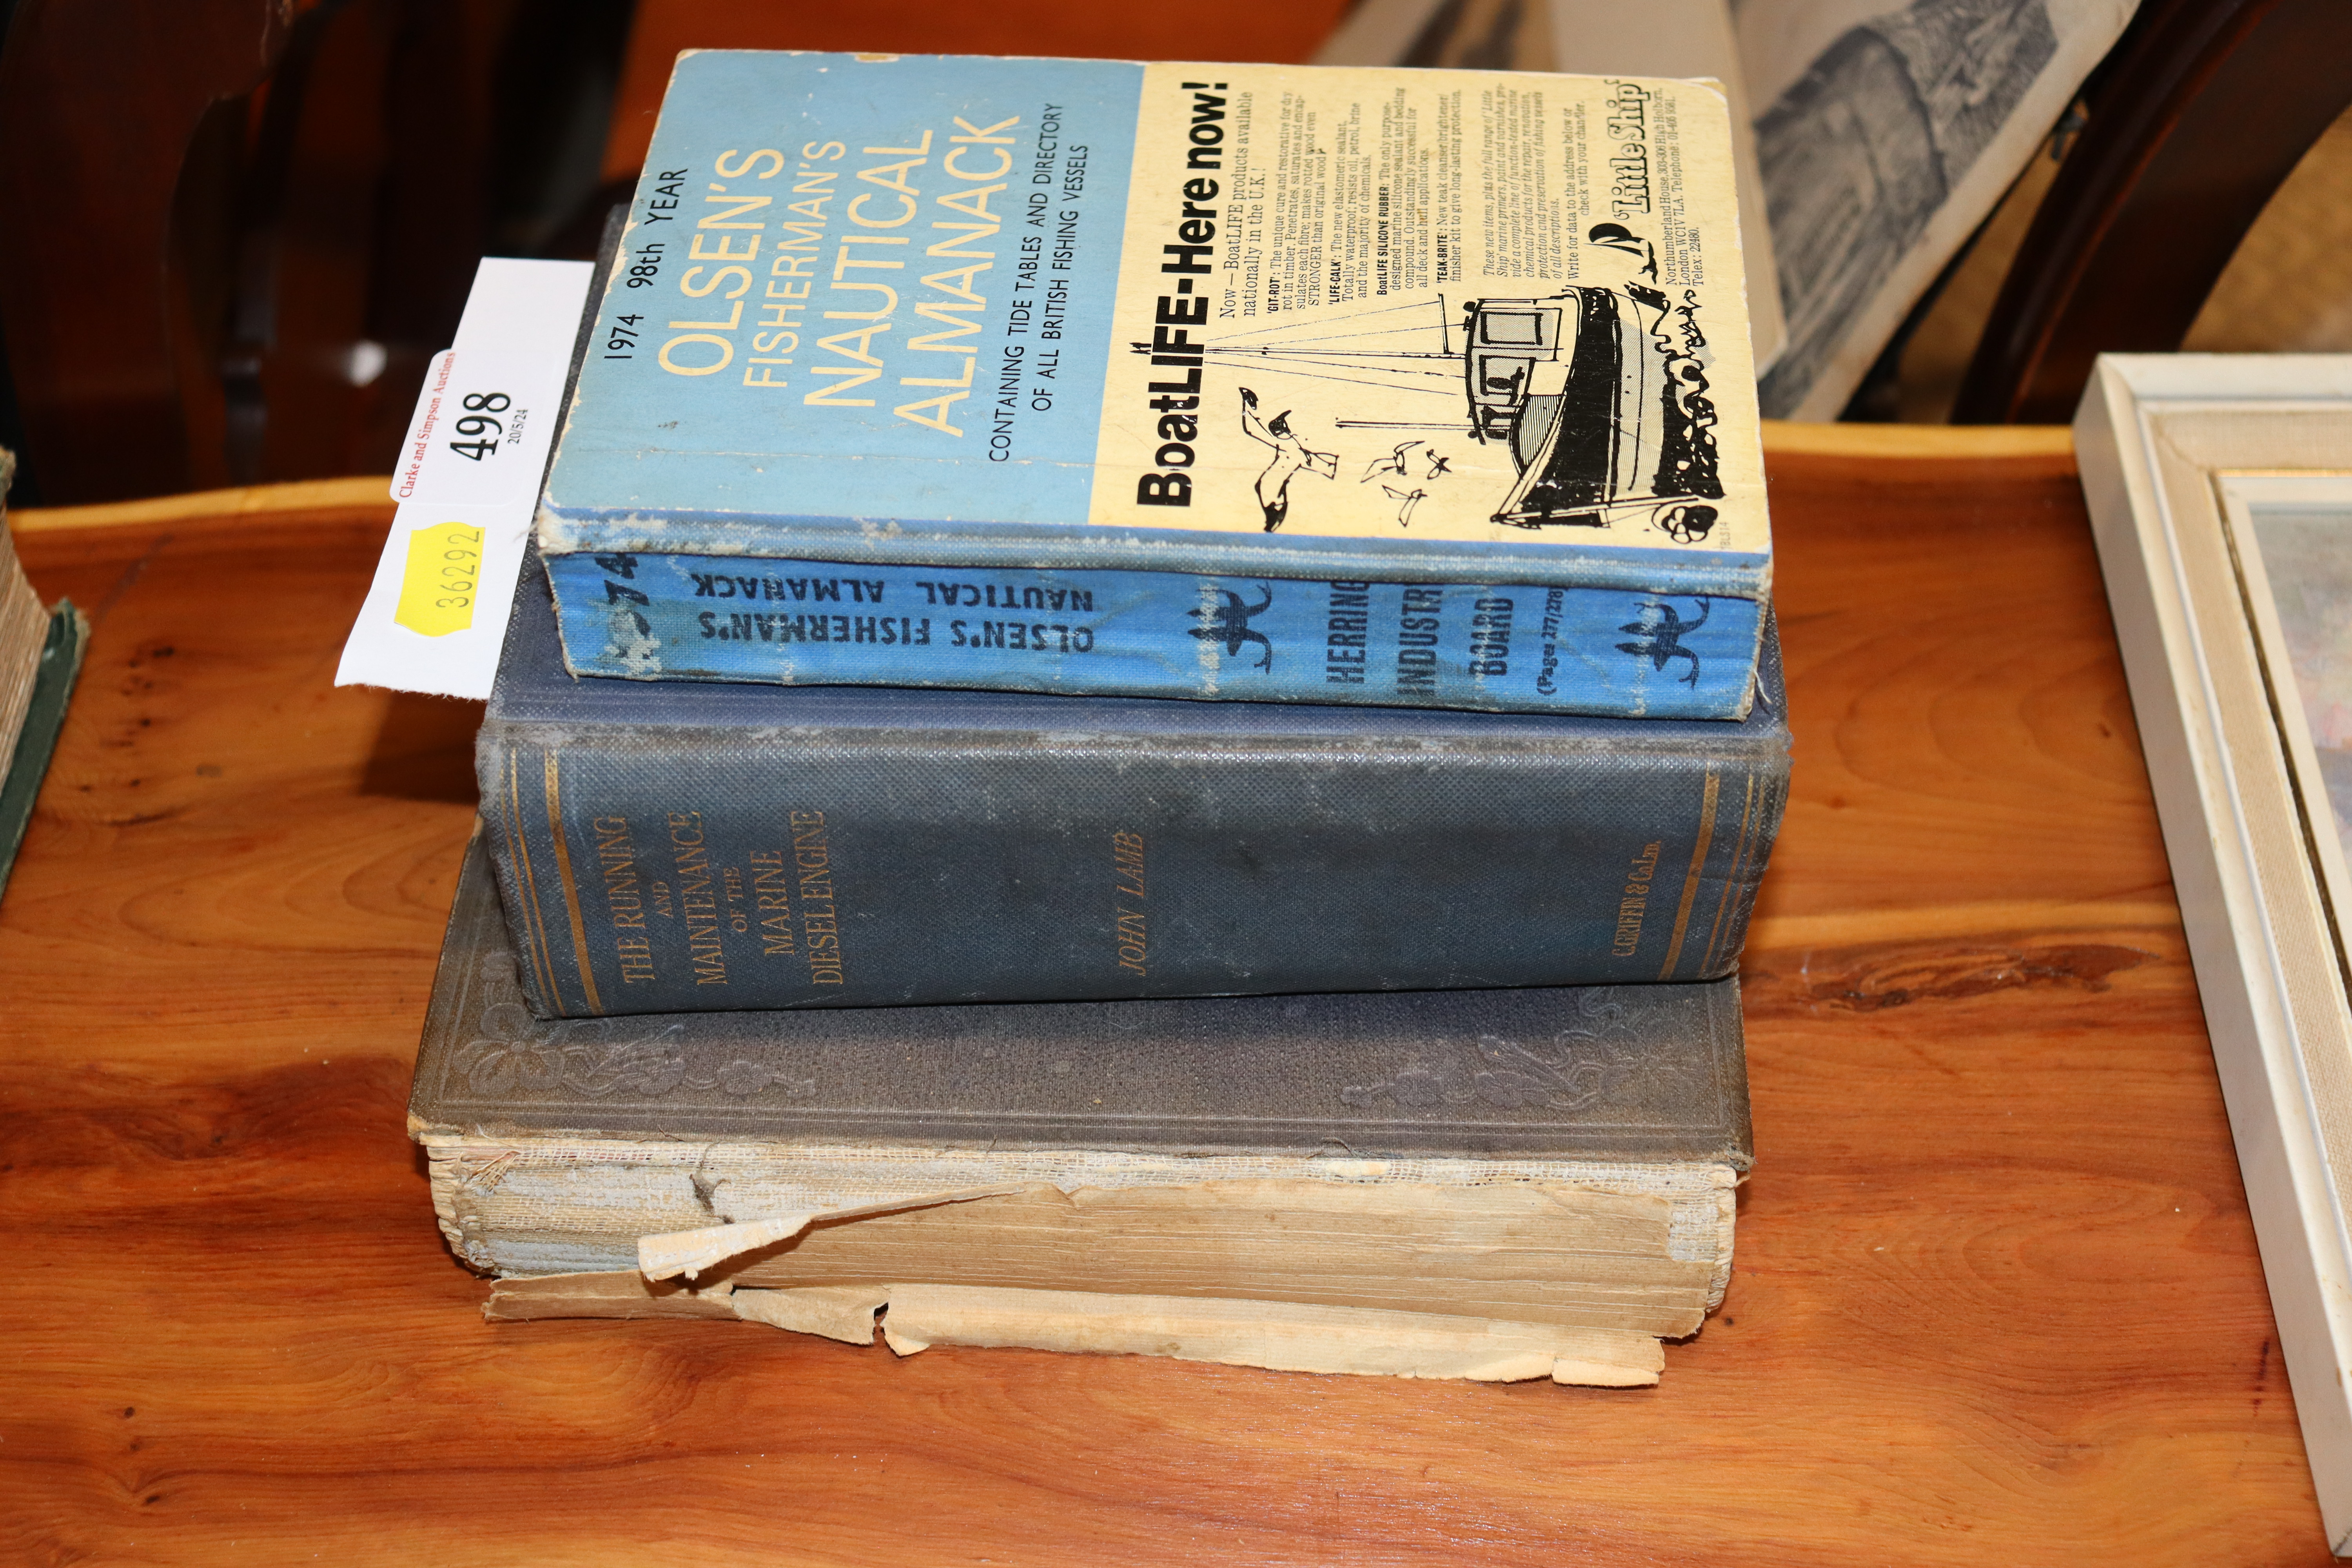 Three marine related books